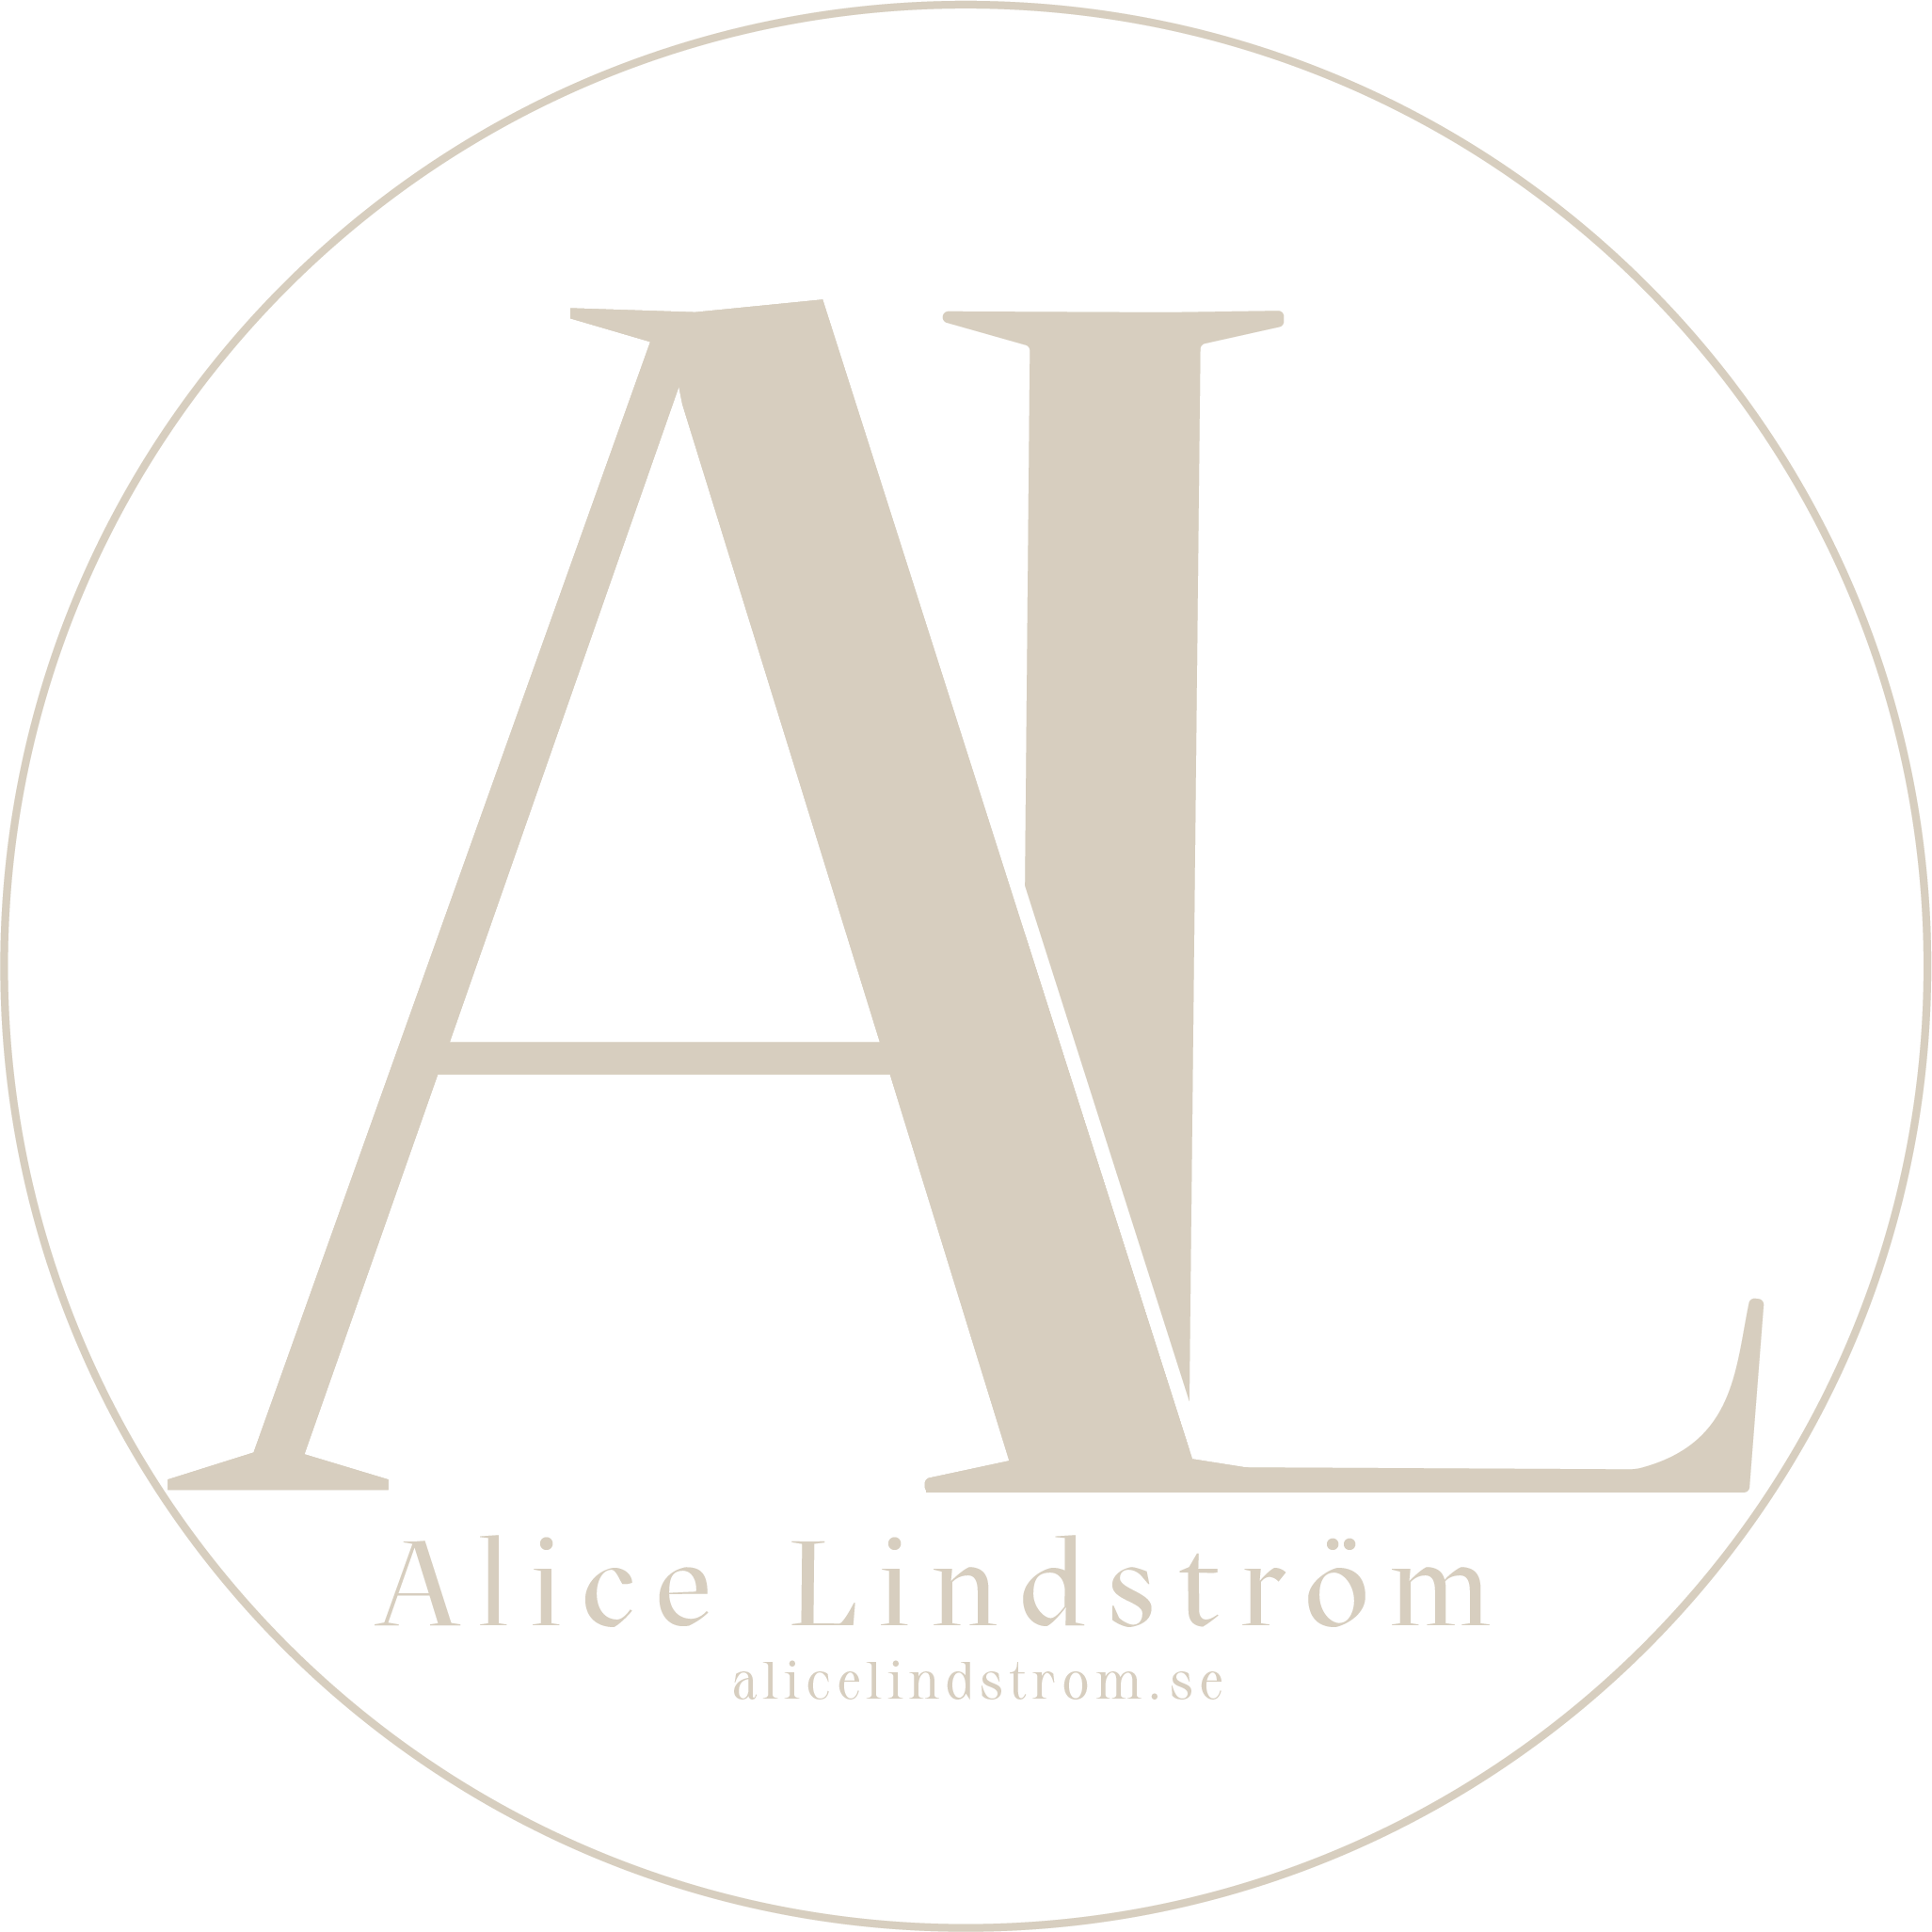 Alice Lindström